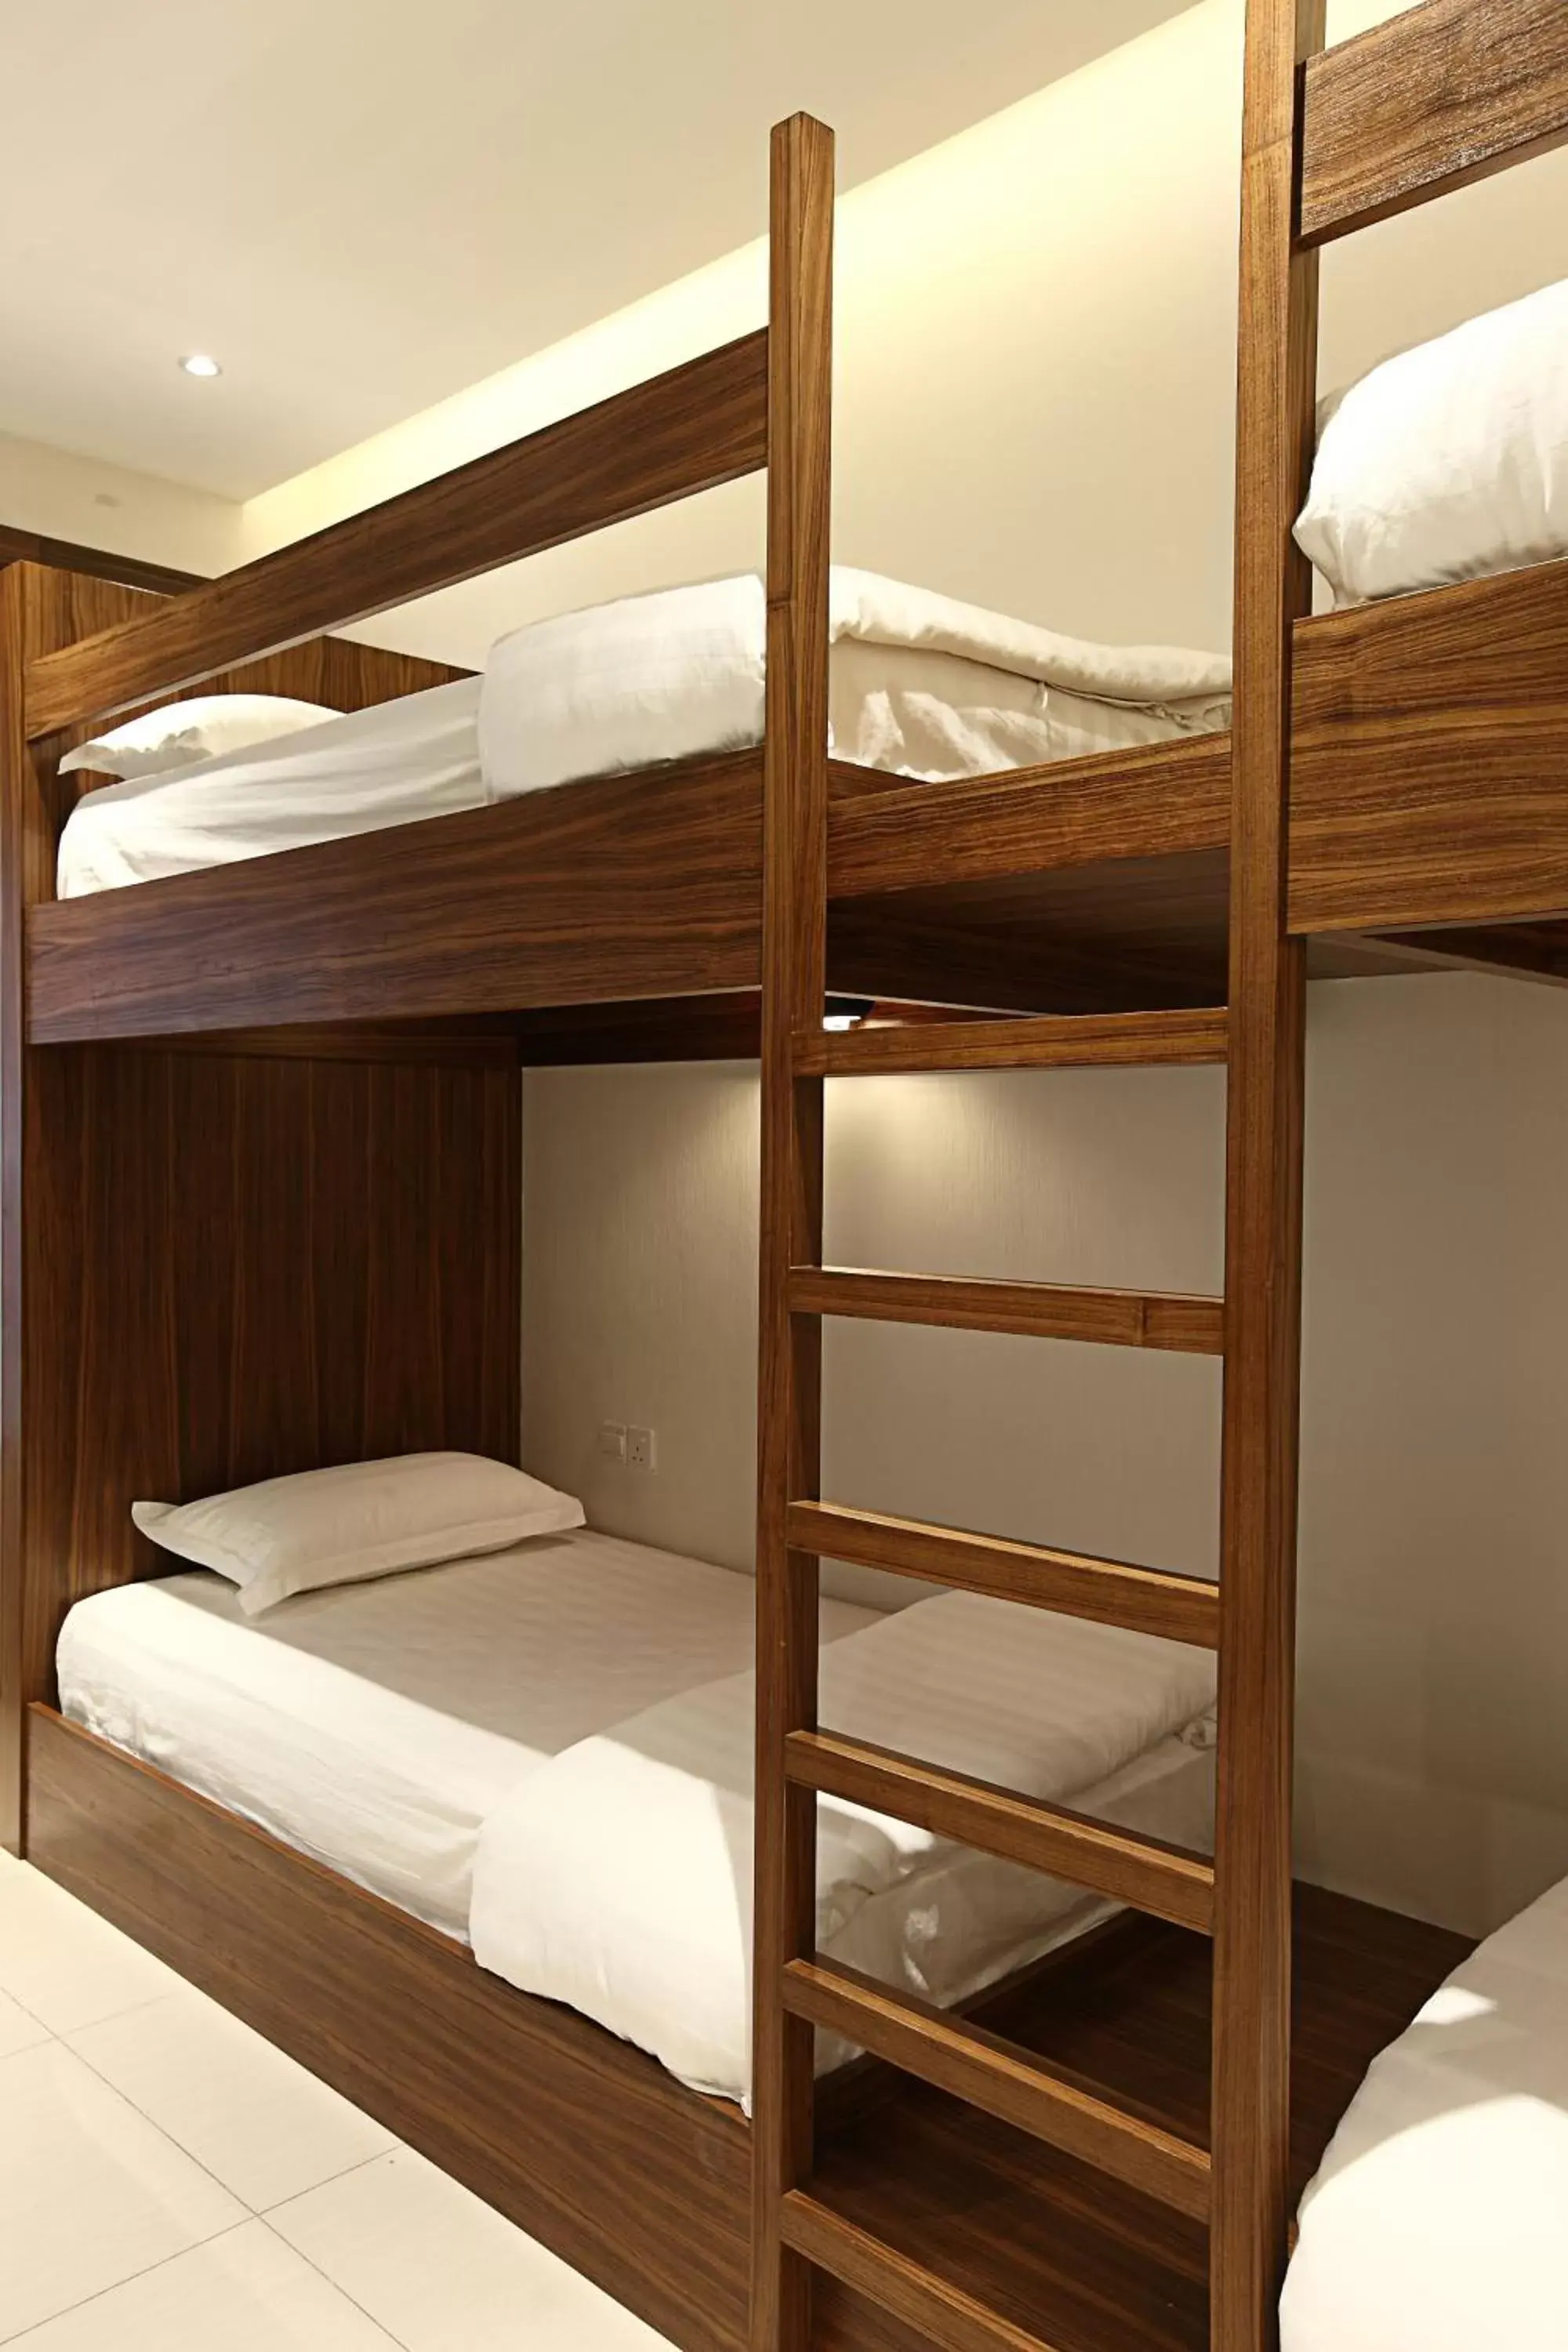 Bed, Bunk Bed in Sri Enstek Hotel KLIA, KLIA 2 & F1